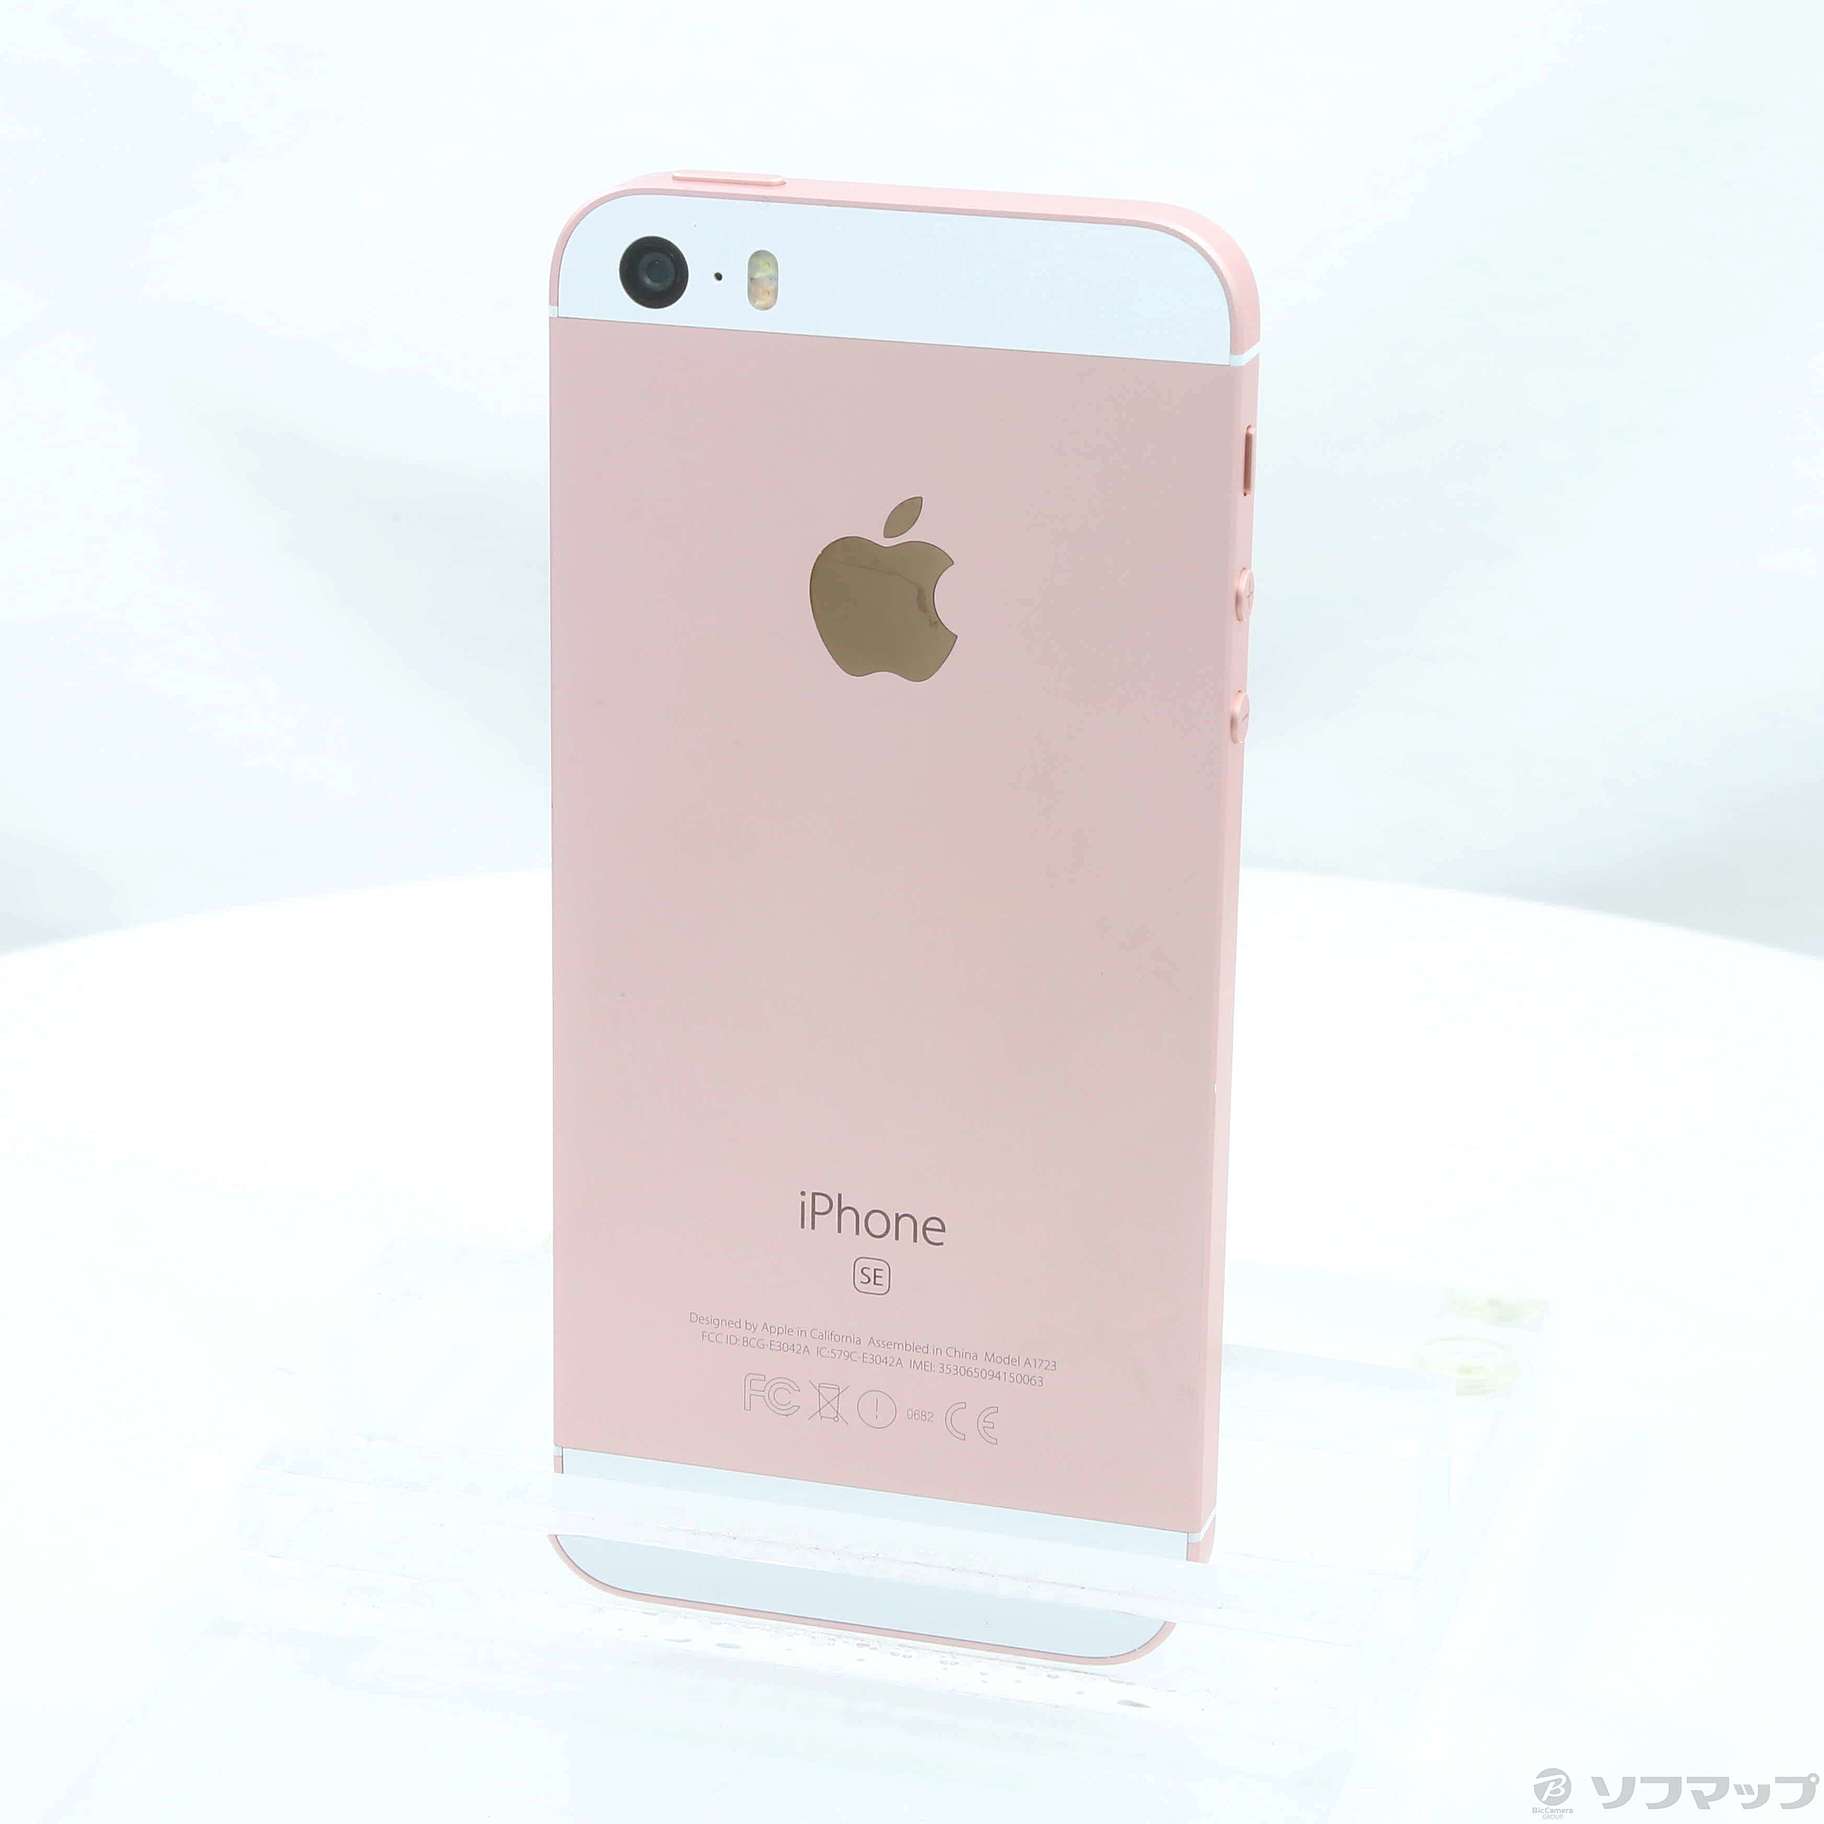 iPhone SE Gold 32 GB UQ mobile - スマートフォン本体